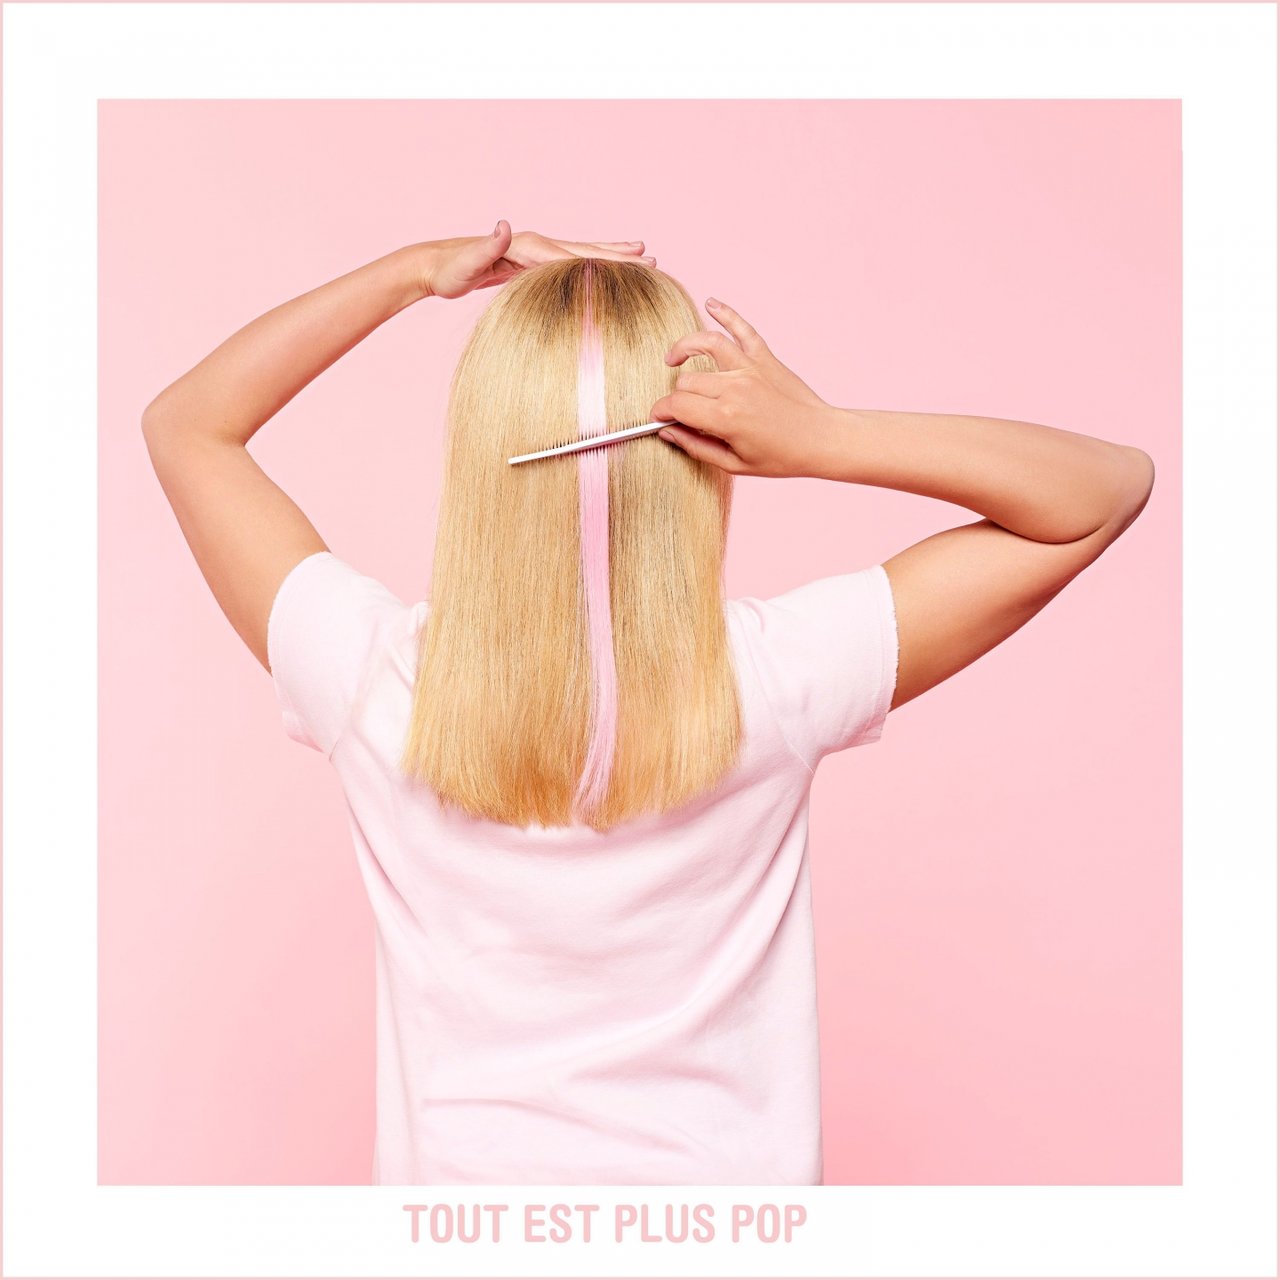 Julie Zenatti — Tout est plus pop cover artwork